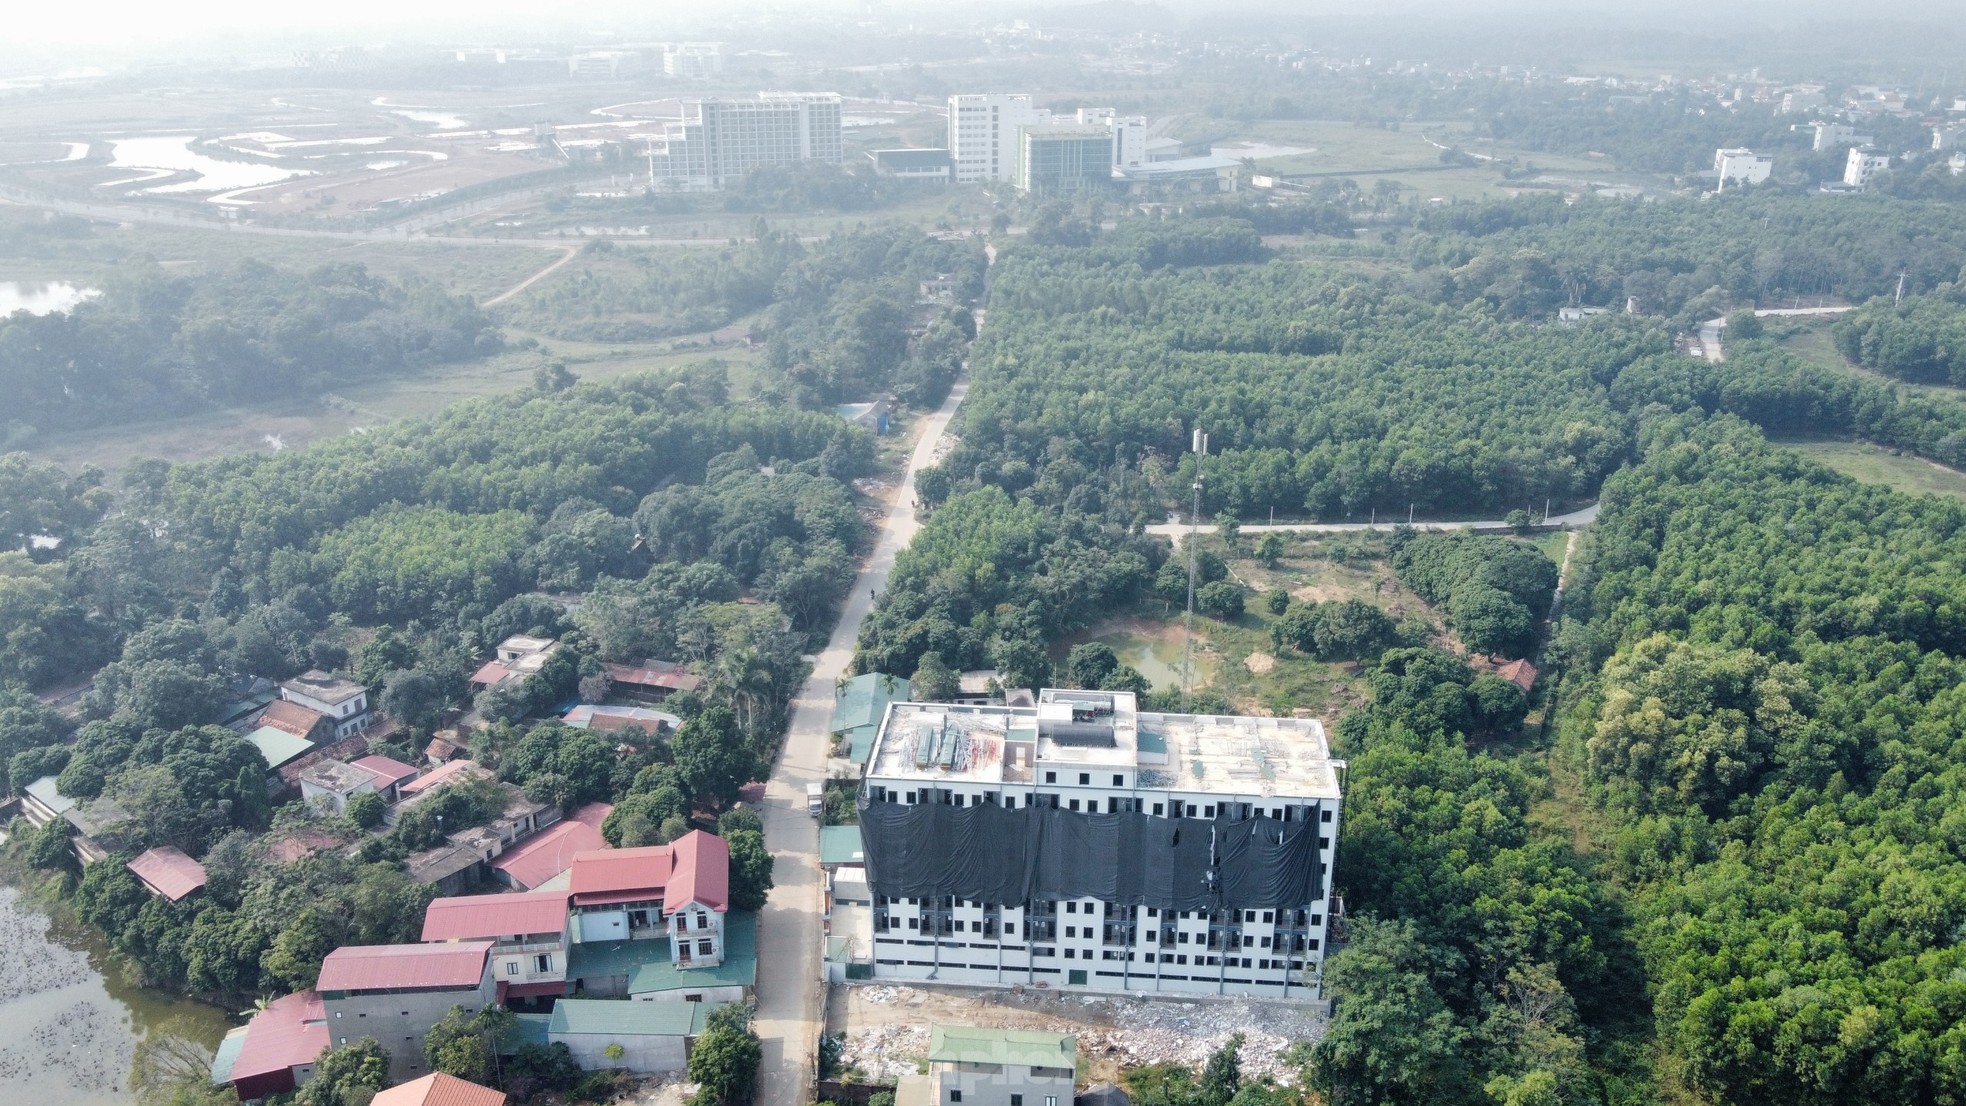 Thủ phủ chung cư mini sai phép ở ngoại thành Hà Nội ì ạch xử lý sai phạm - Ảnh 8.